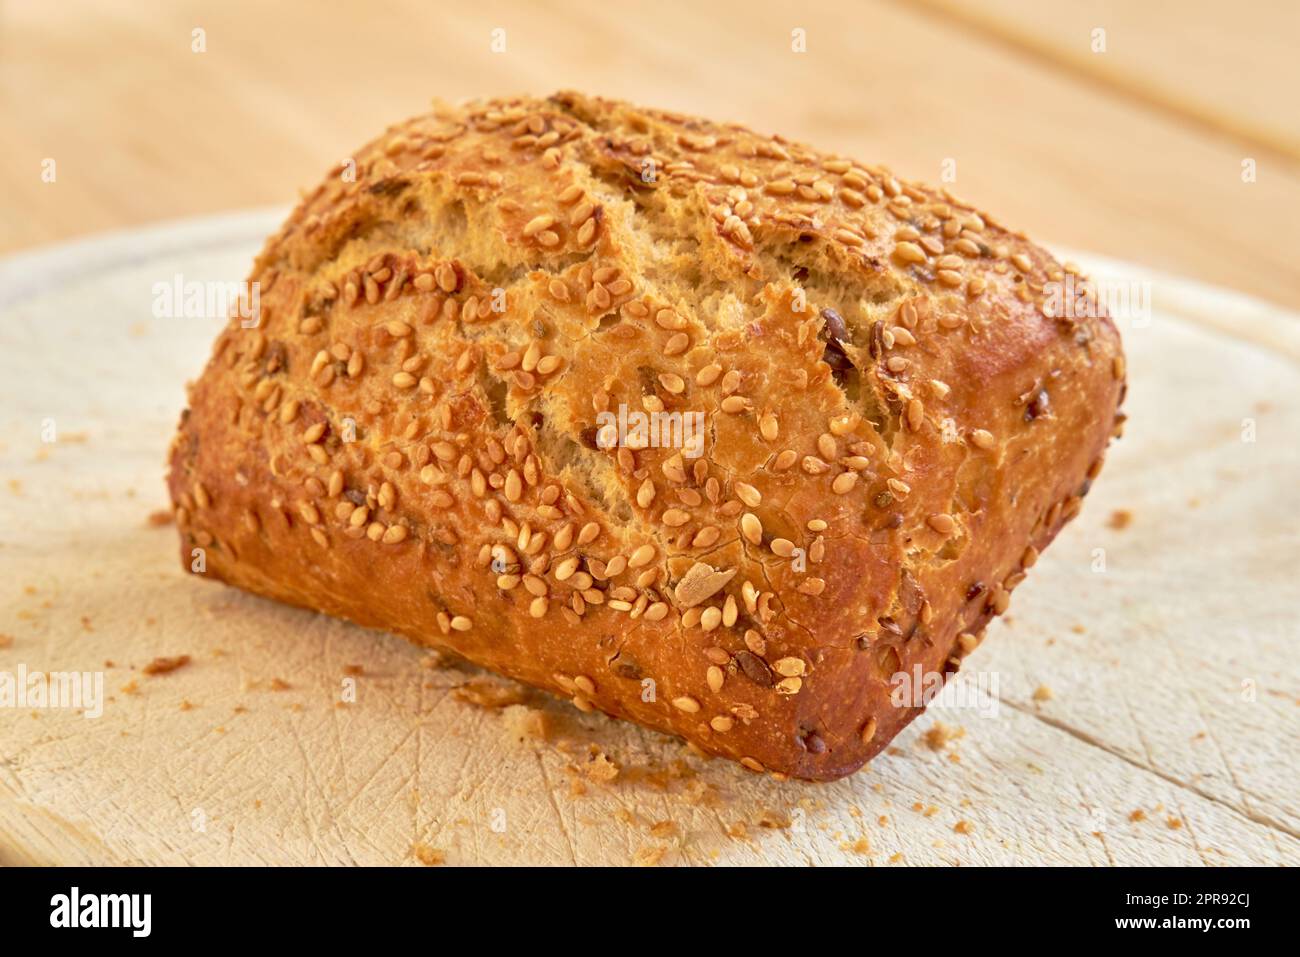 Frisch gebackenes Brot auf einem Tisch in einer Bäckerei oder Küche. Hausgemachtes Weizenbrötchen, frisch zubereitet von einem Ernährungsexperten, der biologisch angebaute, glutenfreie Brote backt, fertig zum Schneiden und als Mahlzeit serviert Stockfoto